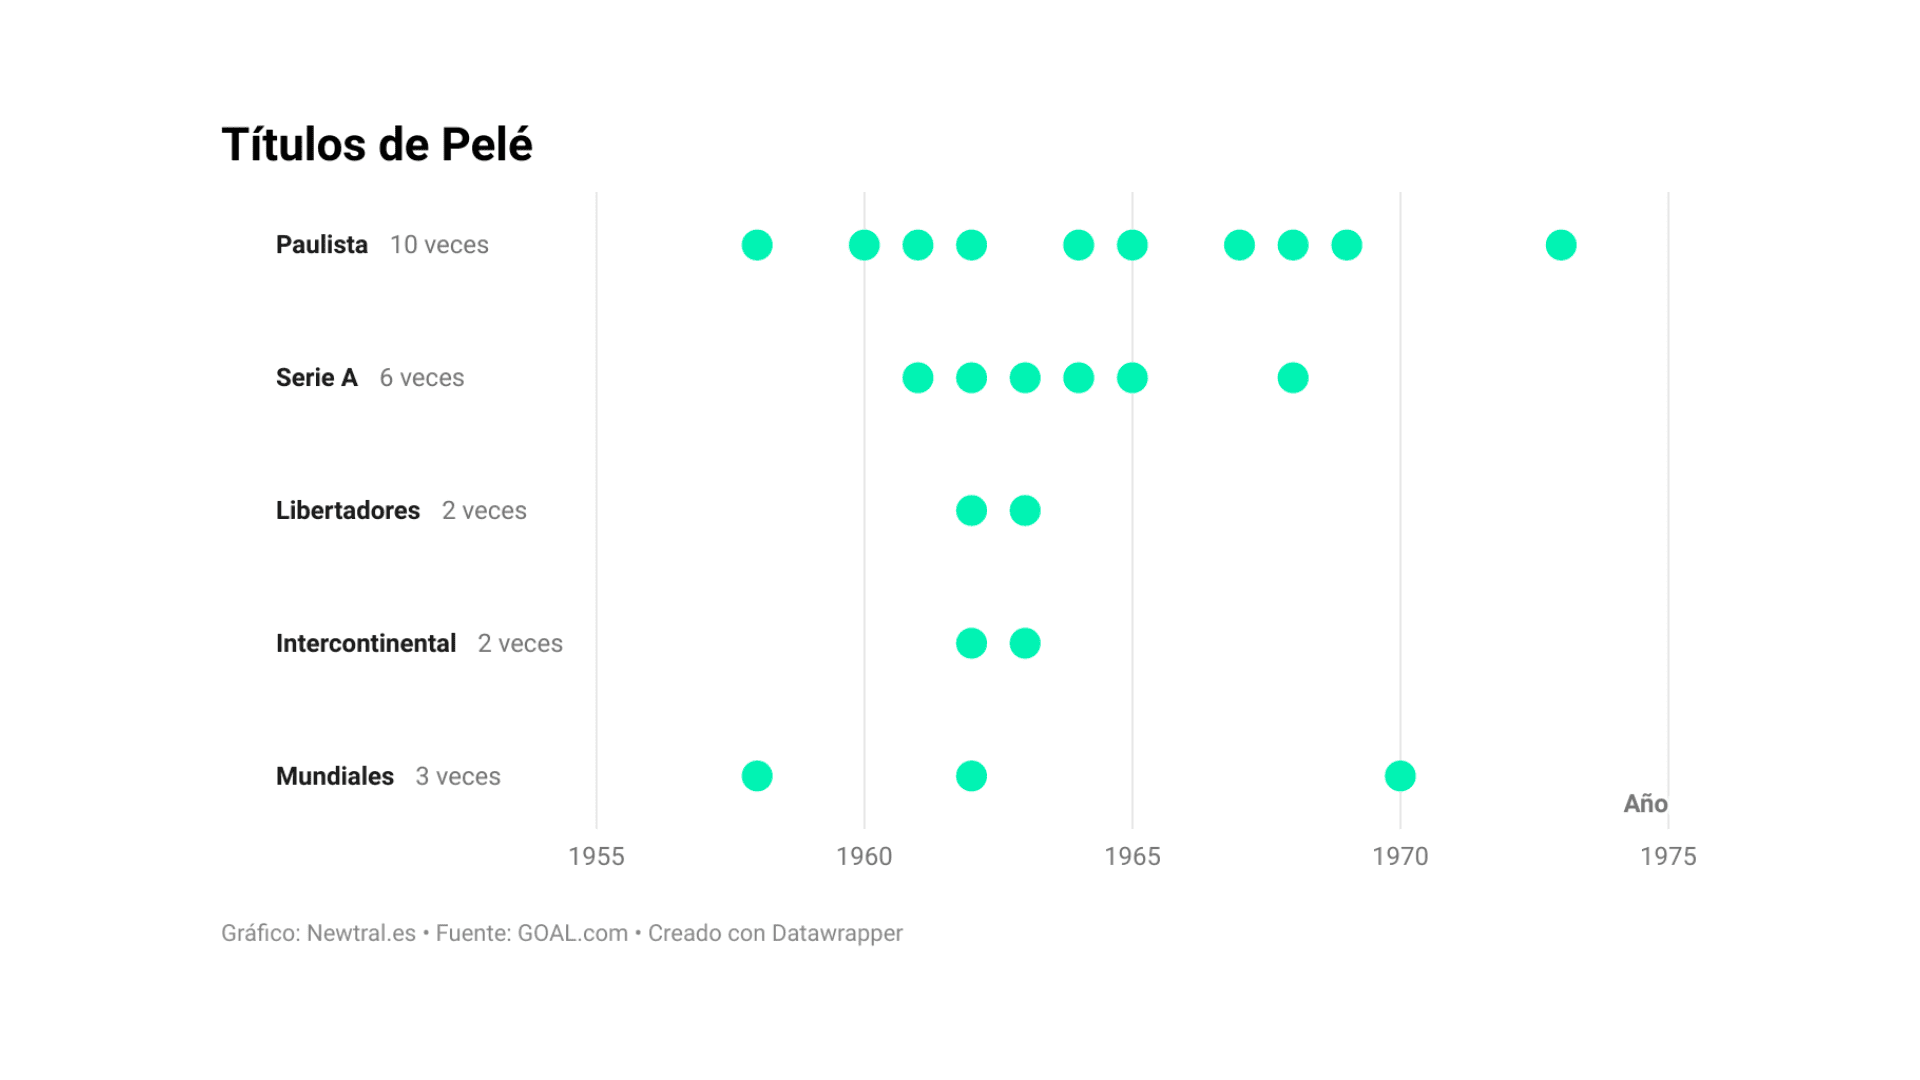 La trayectoria de Pelé en datos